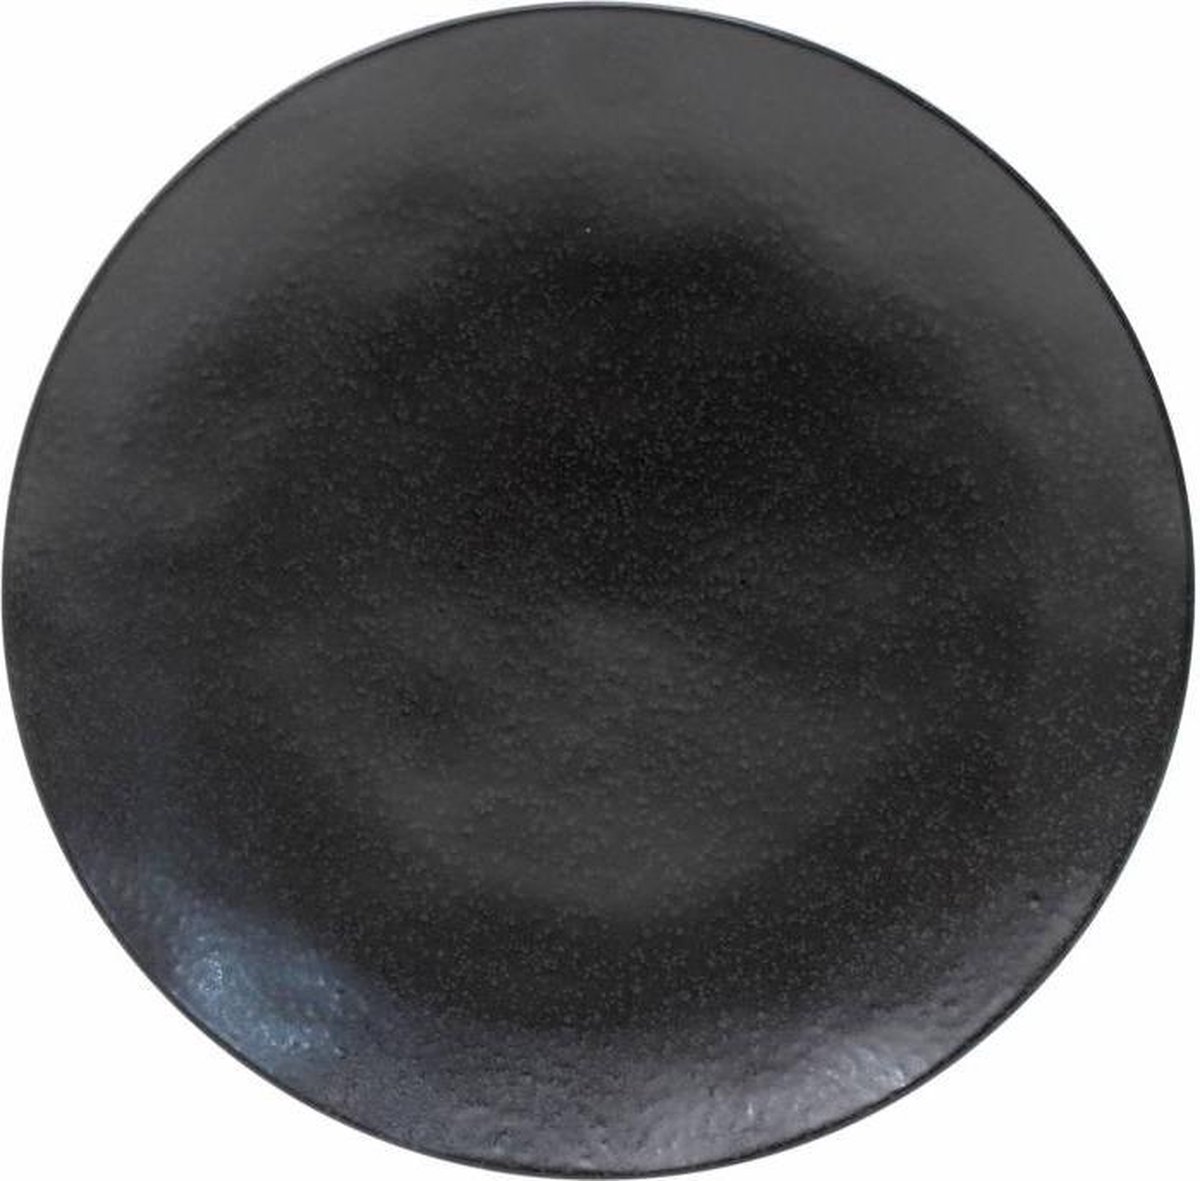 Costa Nova Riviera - servies - onderbord Sable Noir - aardewerk - mat zwart - set van 2 - 30,9 cm rond